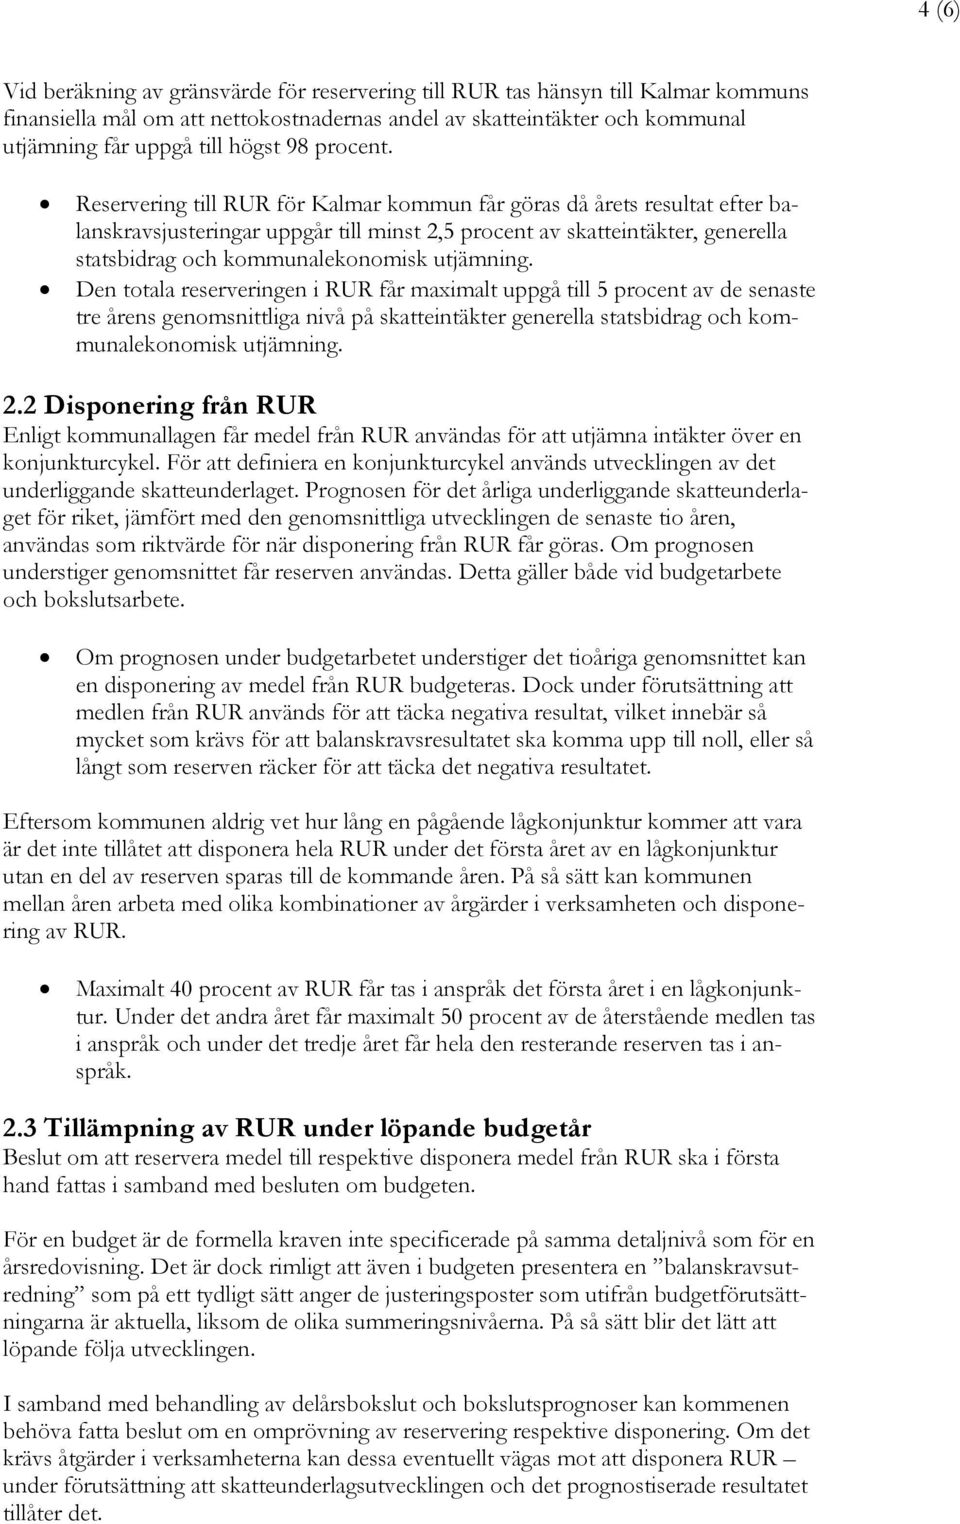 Reservering till RUR för Kalmar kommun får göras då årets resultat efter balanskravsjusteringar uppgår till minst 2,5 procent av skatteintäkter, generella statsbidrag och kommunalekonomisk utjämning.